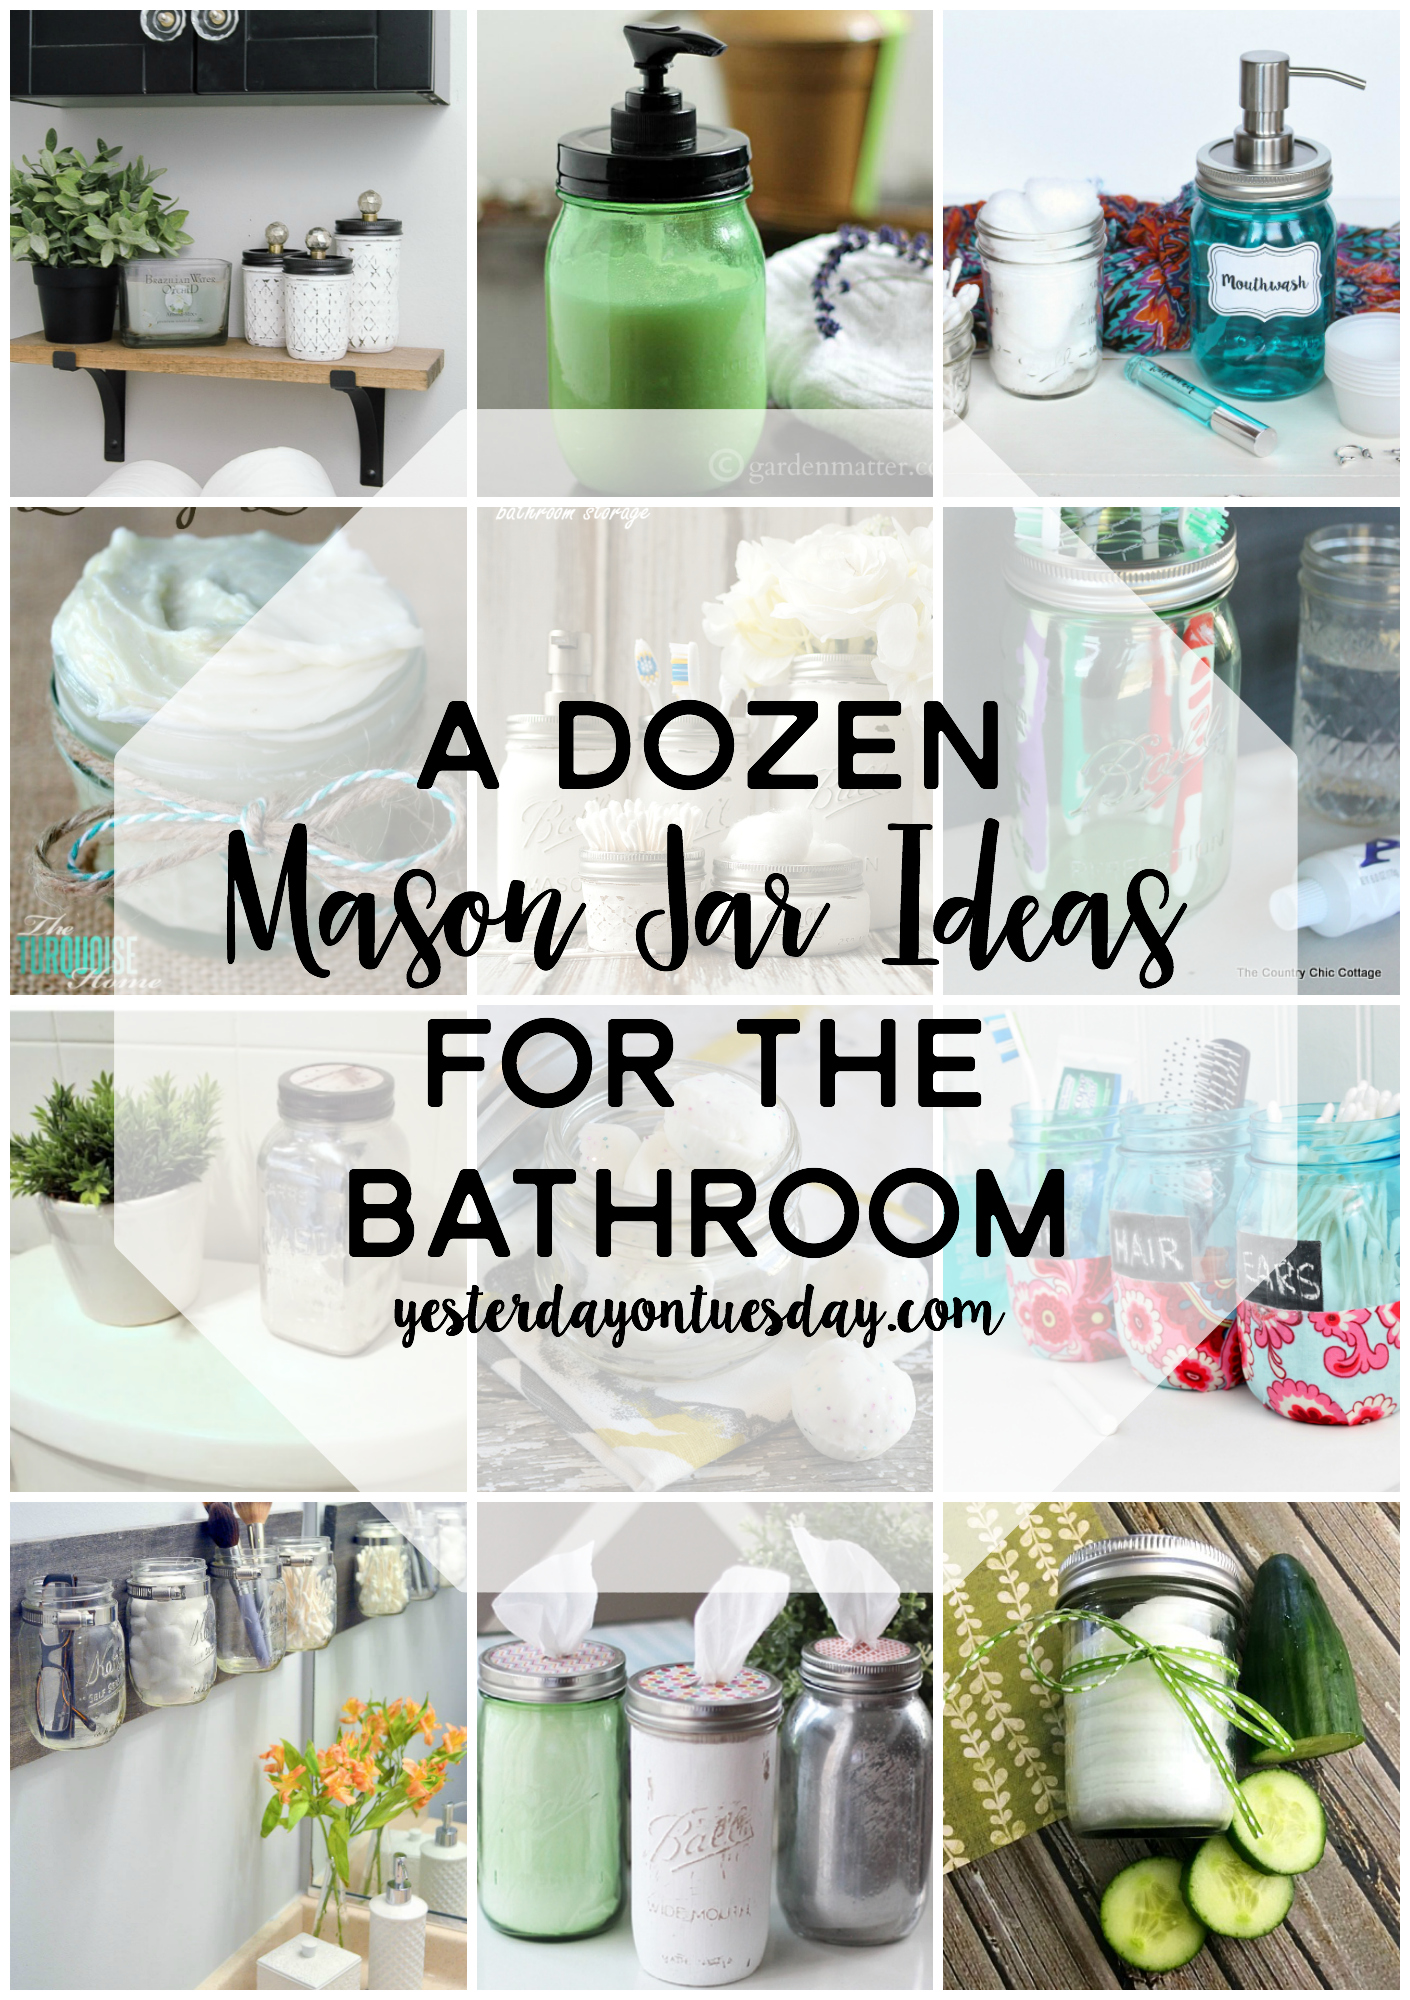 https://yesterdayontuesday.com/wp-content/uploads/2017/02/A-Dozen-Mason-Jar-Ideas-for-the-Bathroom.jpg